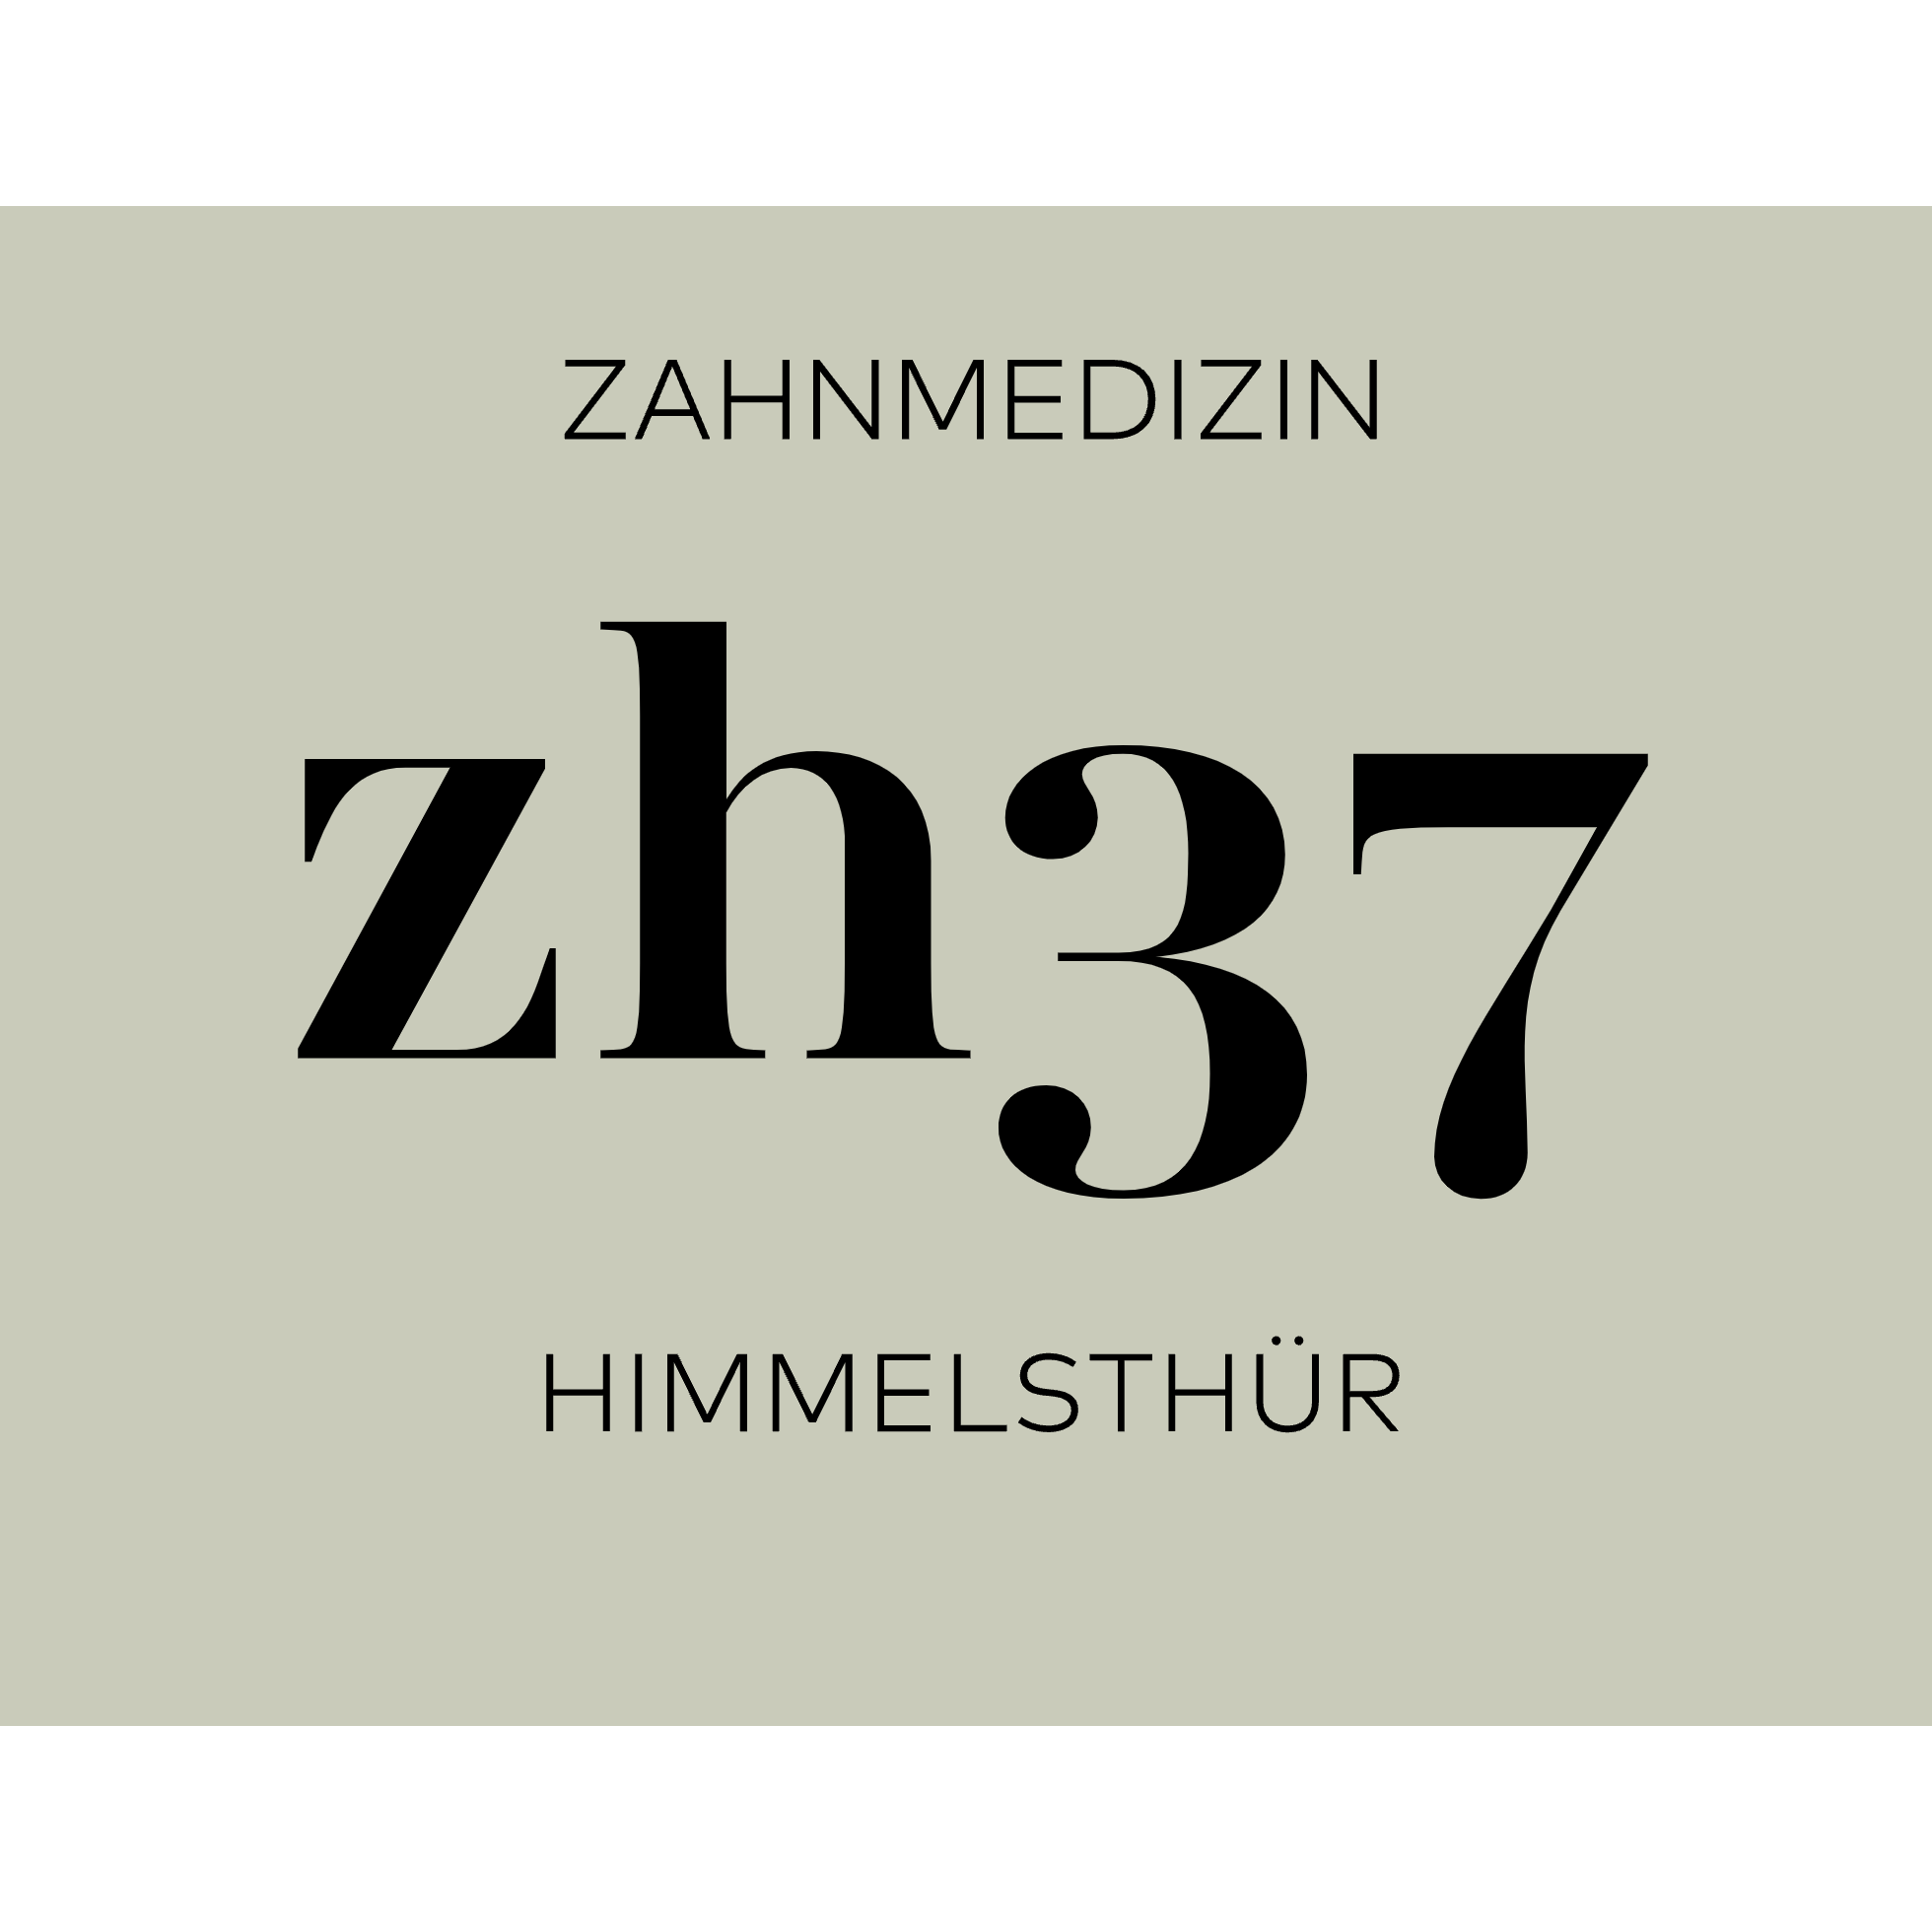 Zahnmedizin Himmelsthür zh37 - Logo